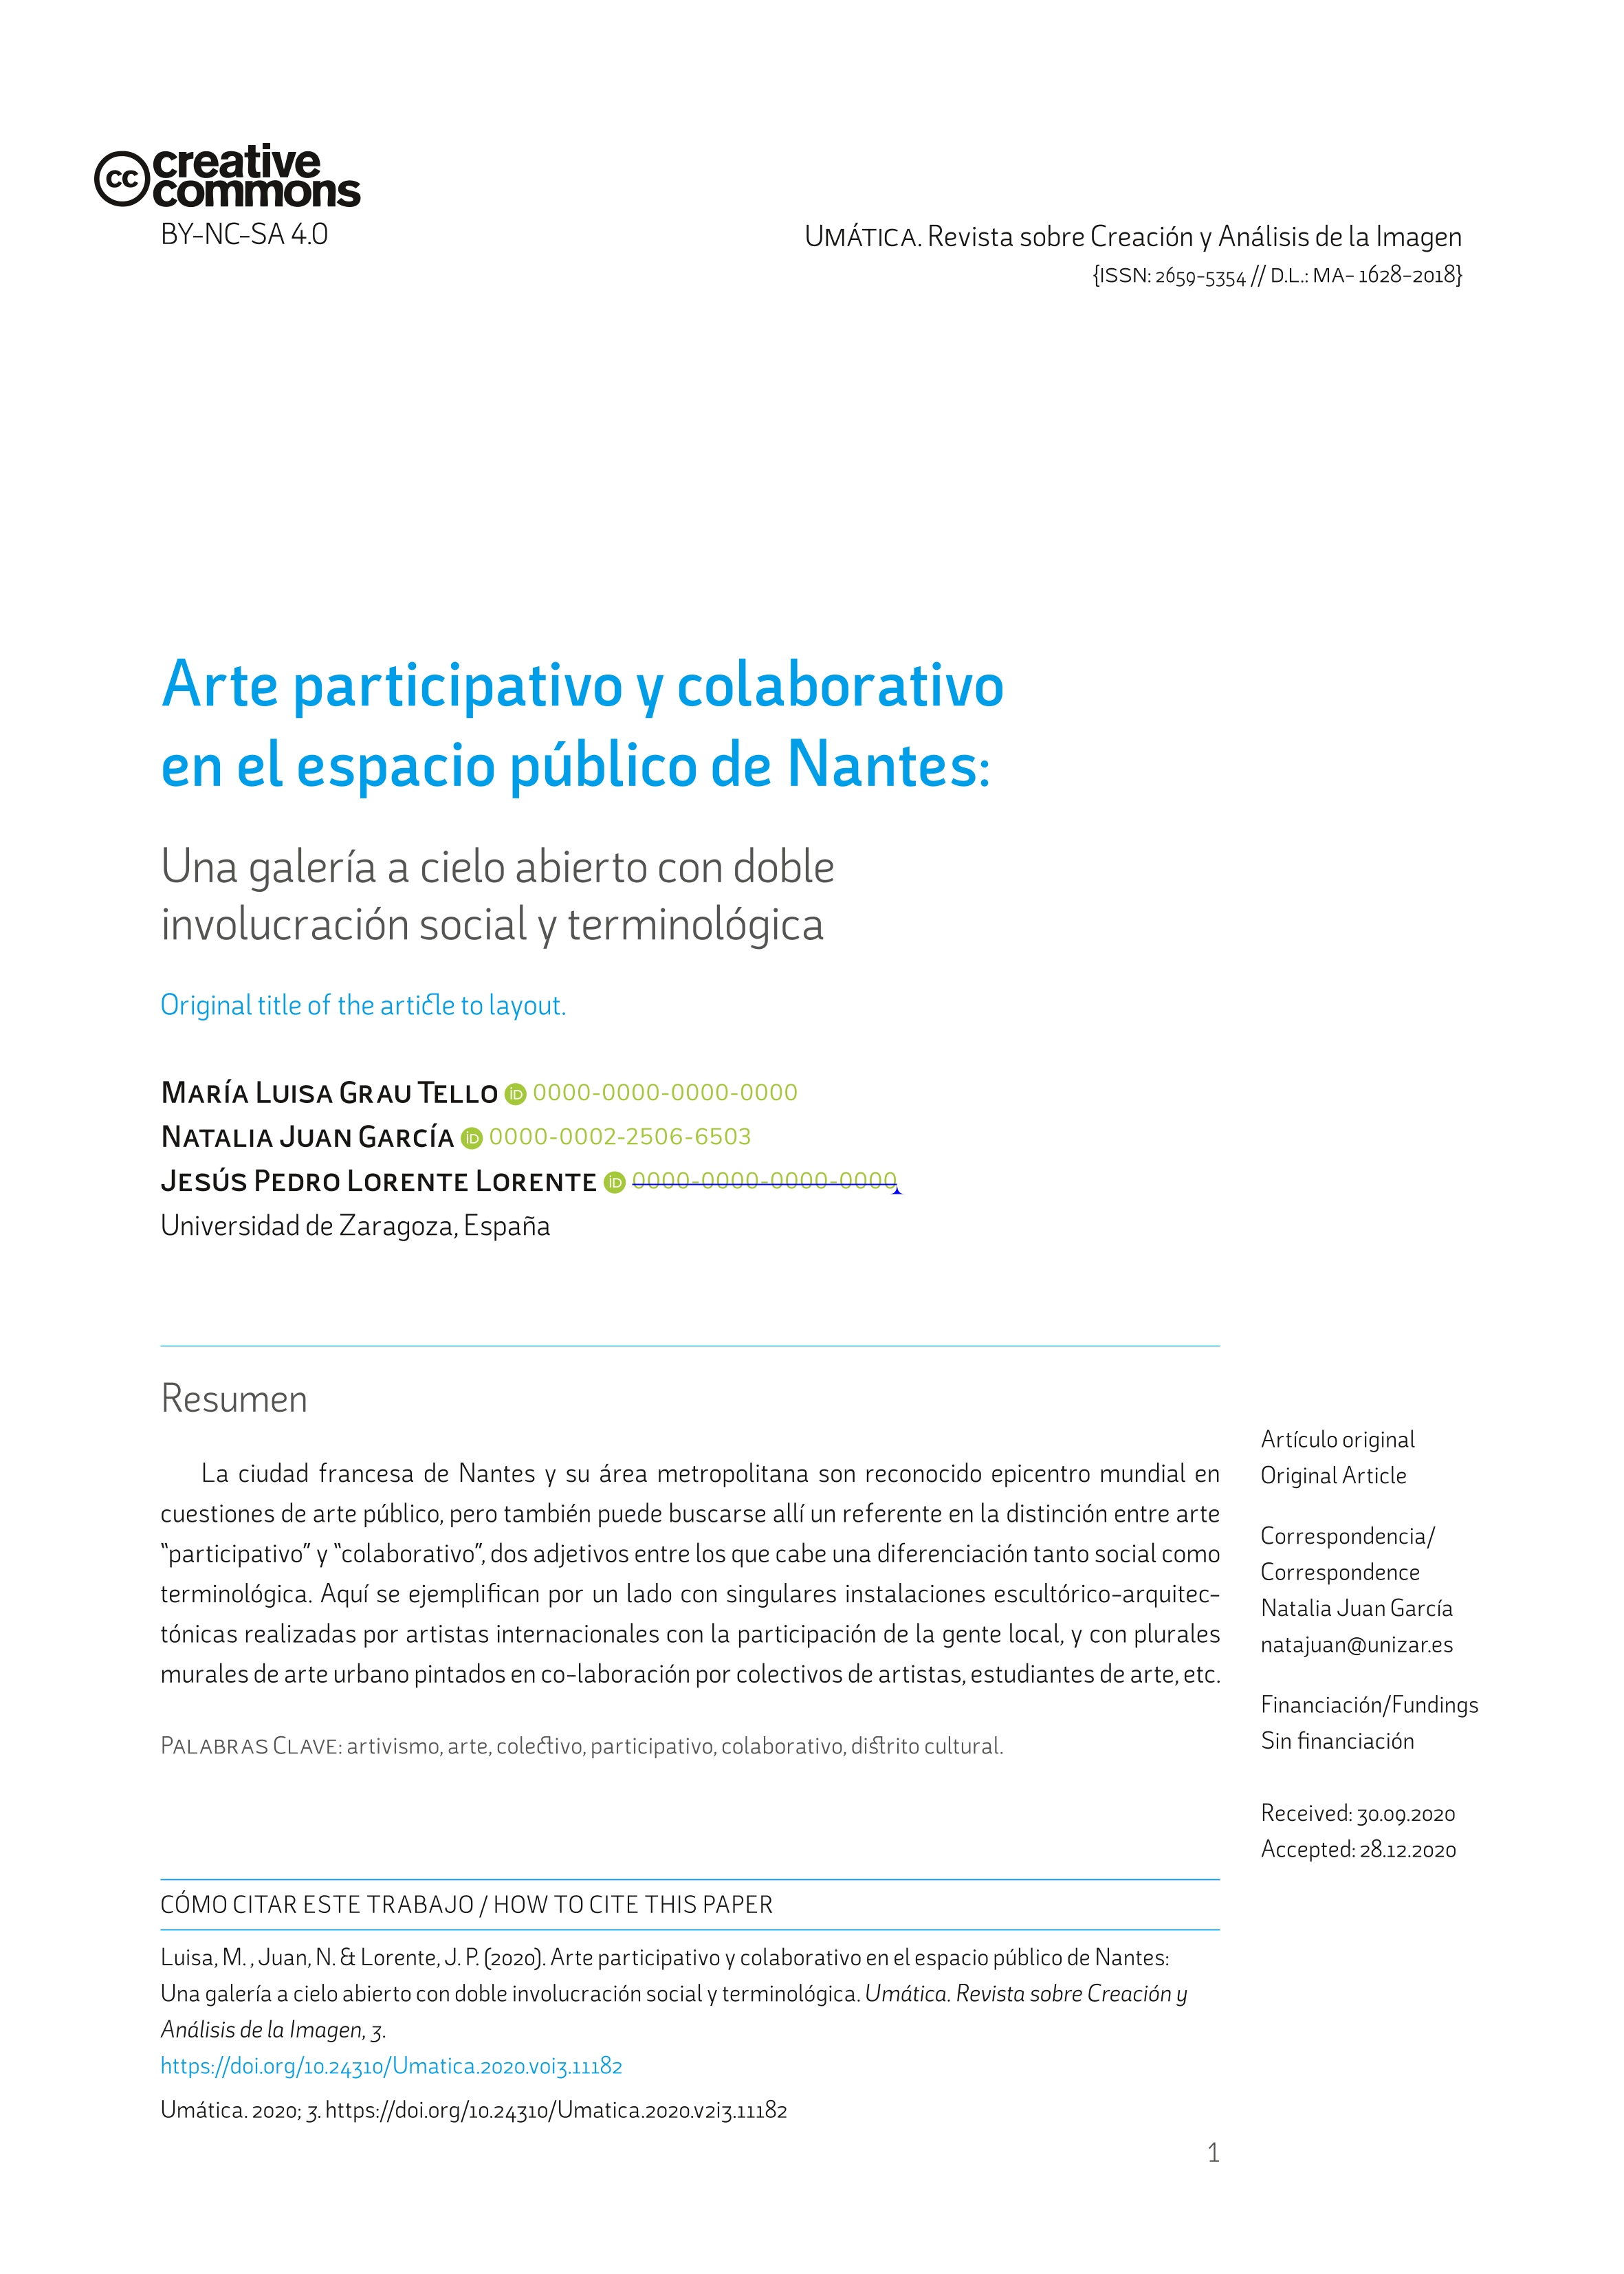 Arte participativo y colaborativo en el espacio público de Nantes: Una galería a cielo abierto con doble involucración social y terminológica